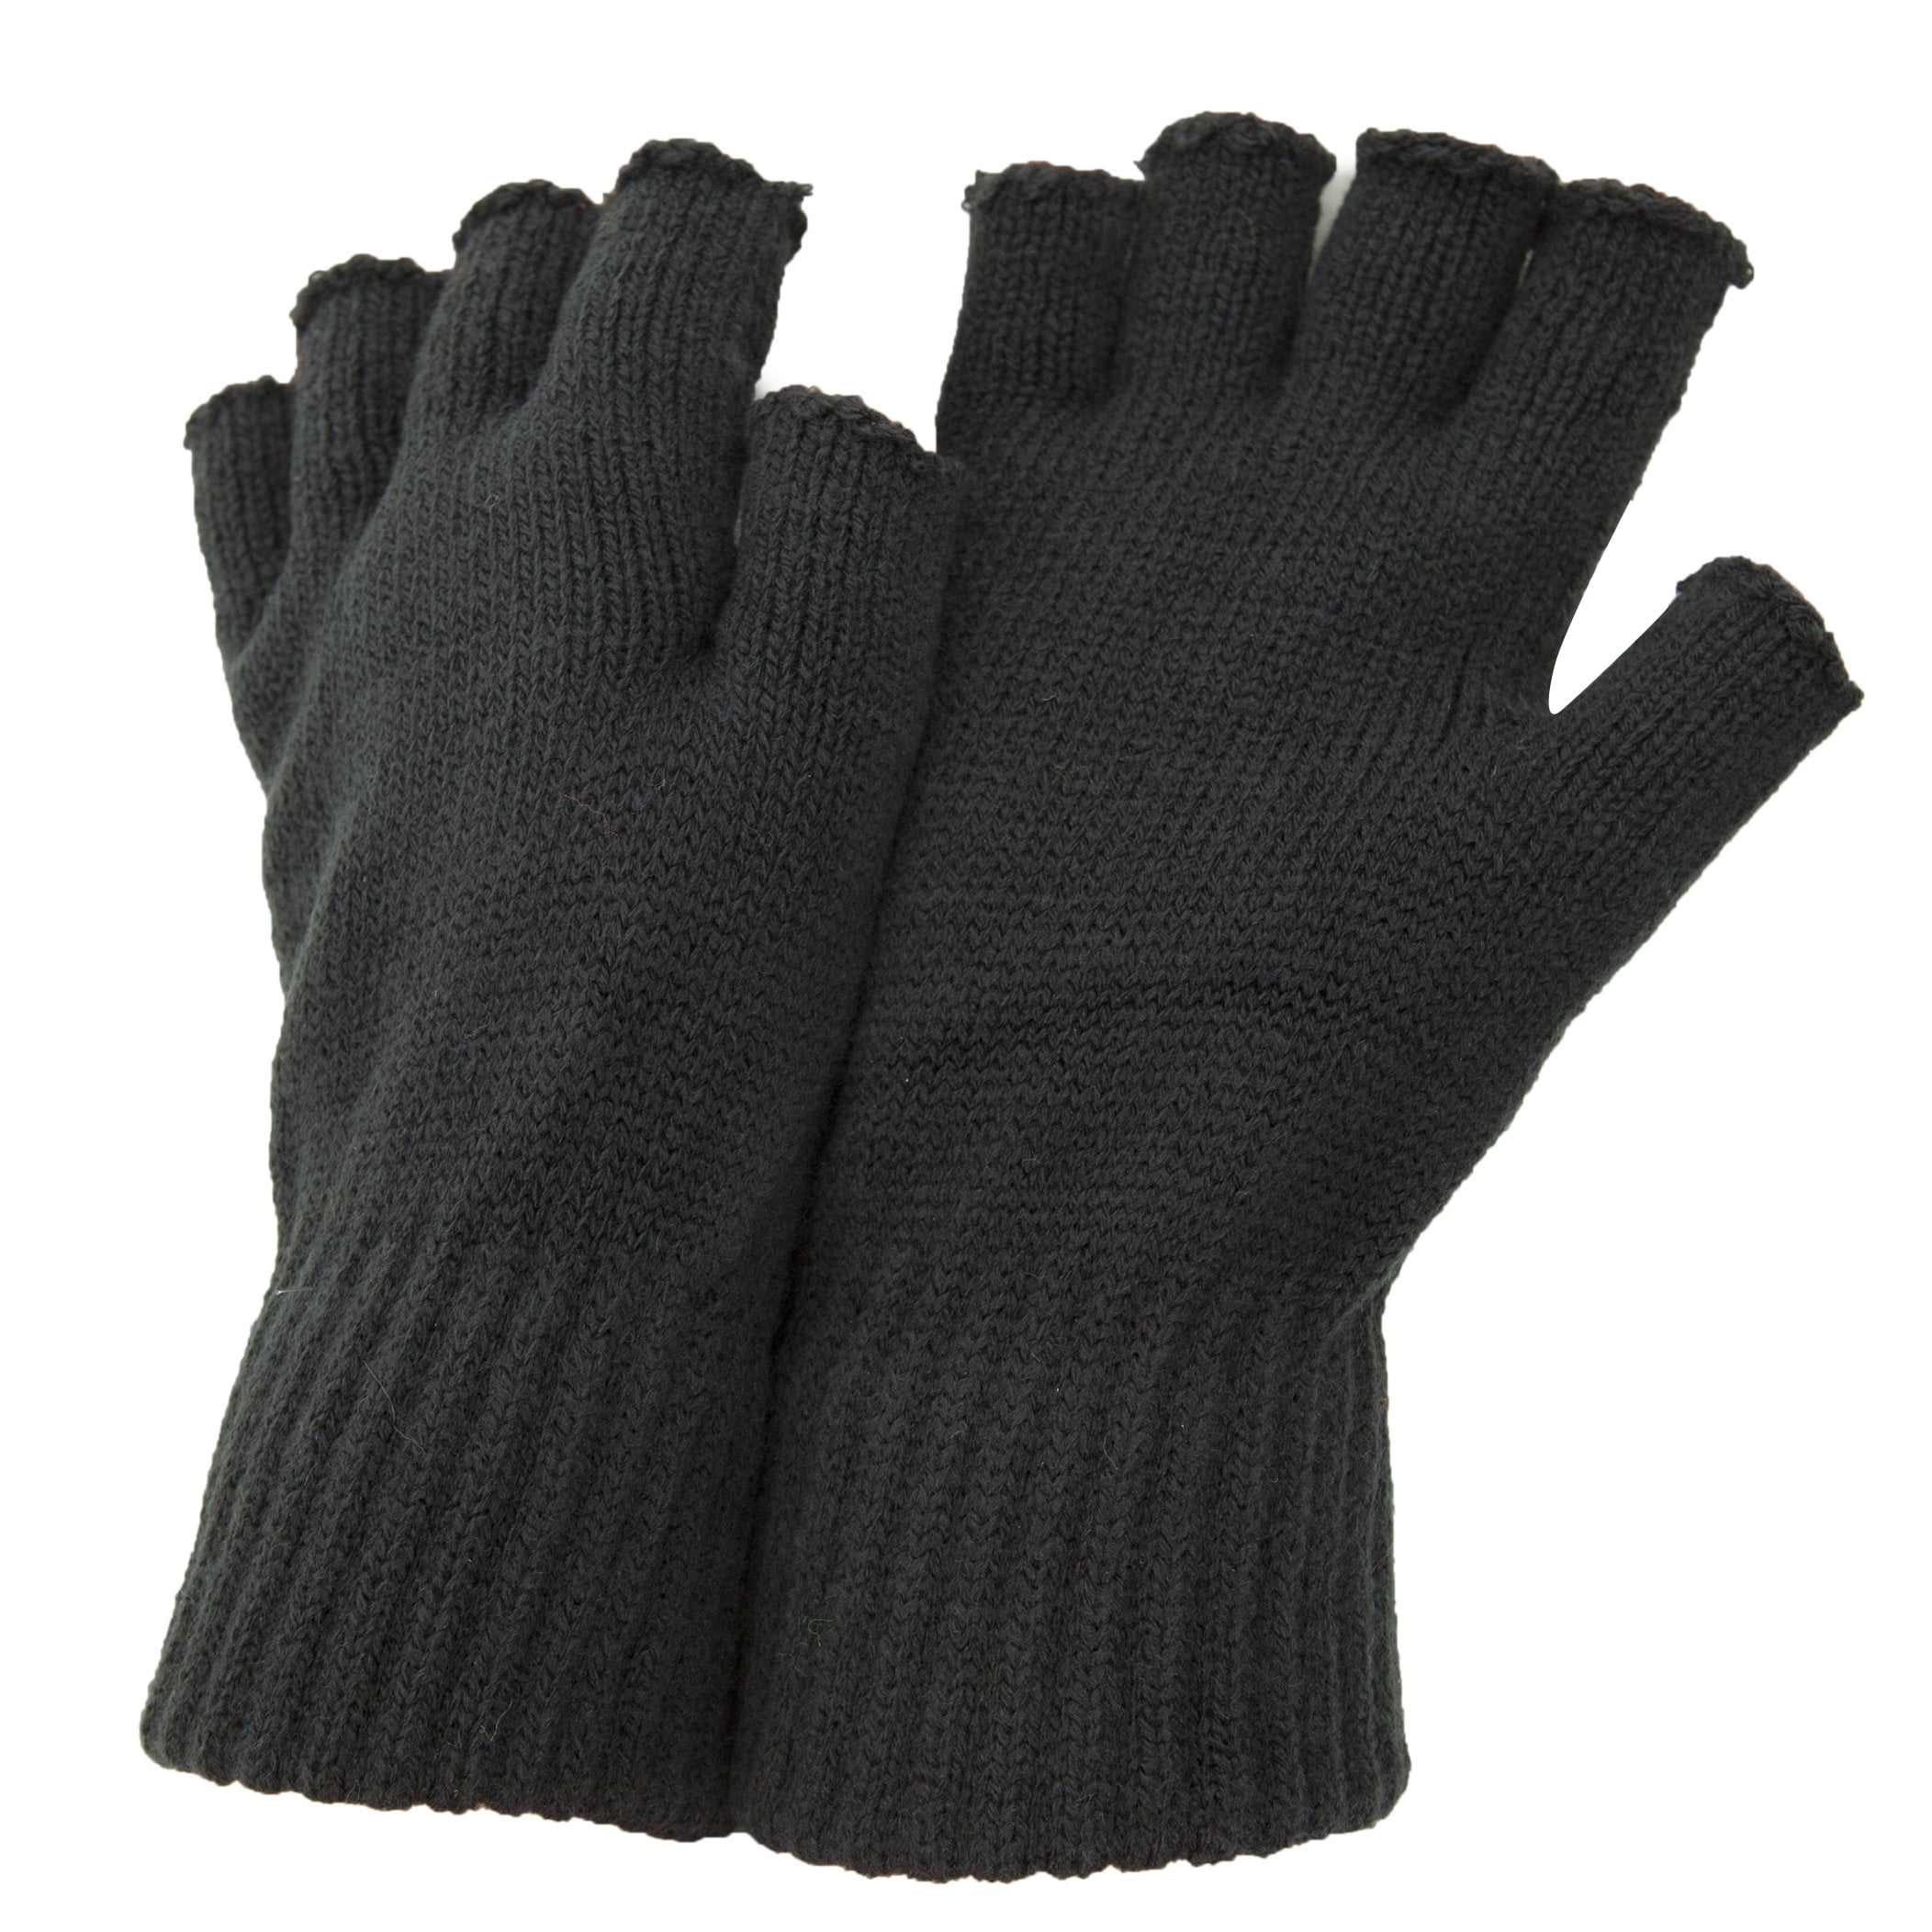 FLOSO Mens Winter Fingerless Gloves MG-12D 